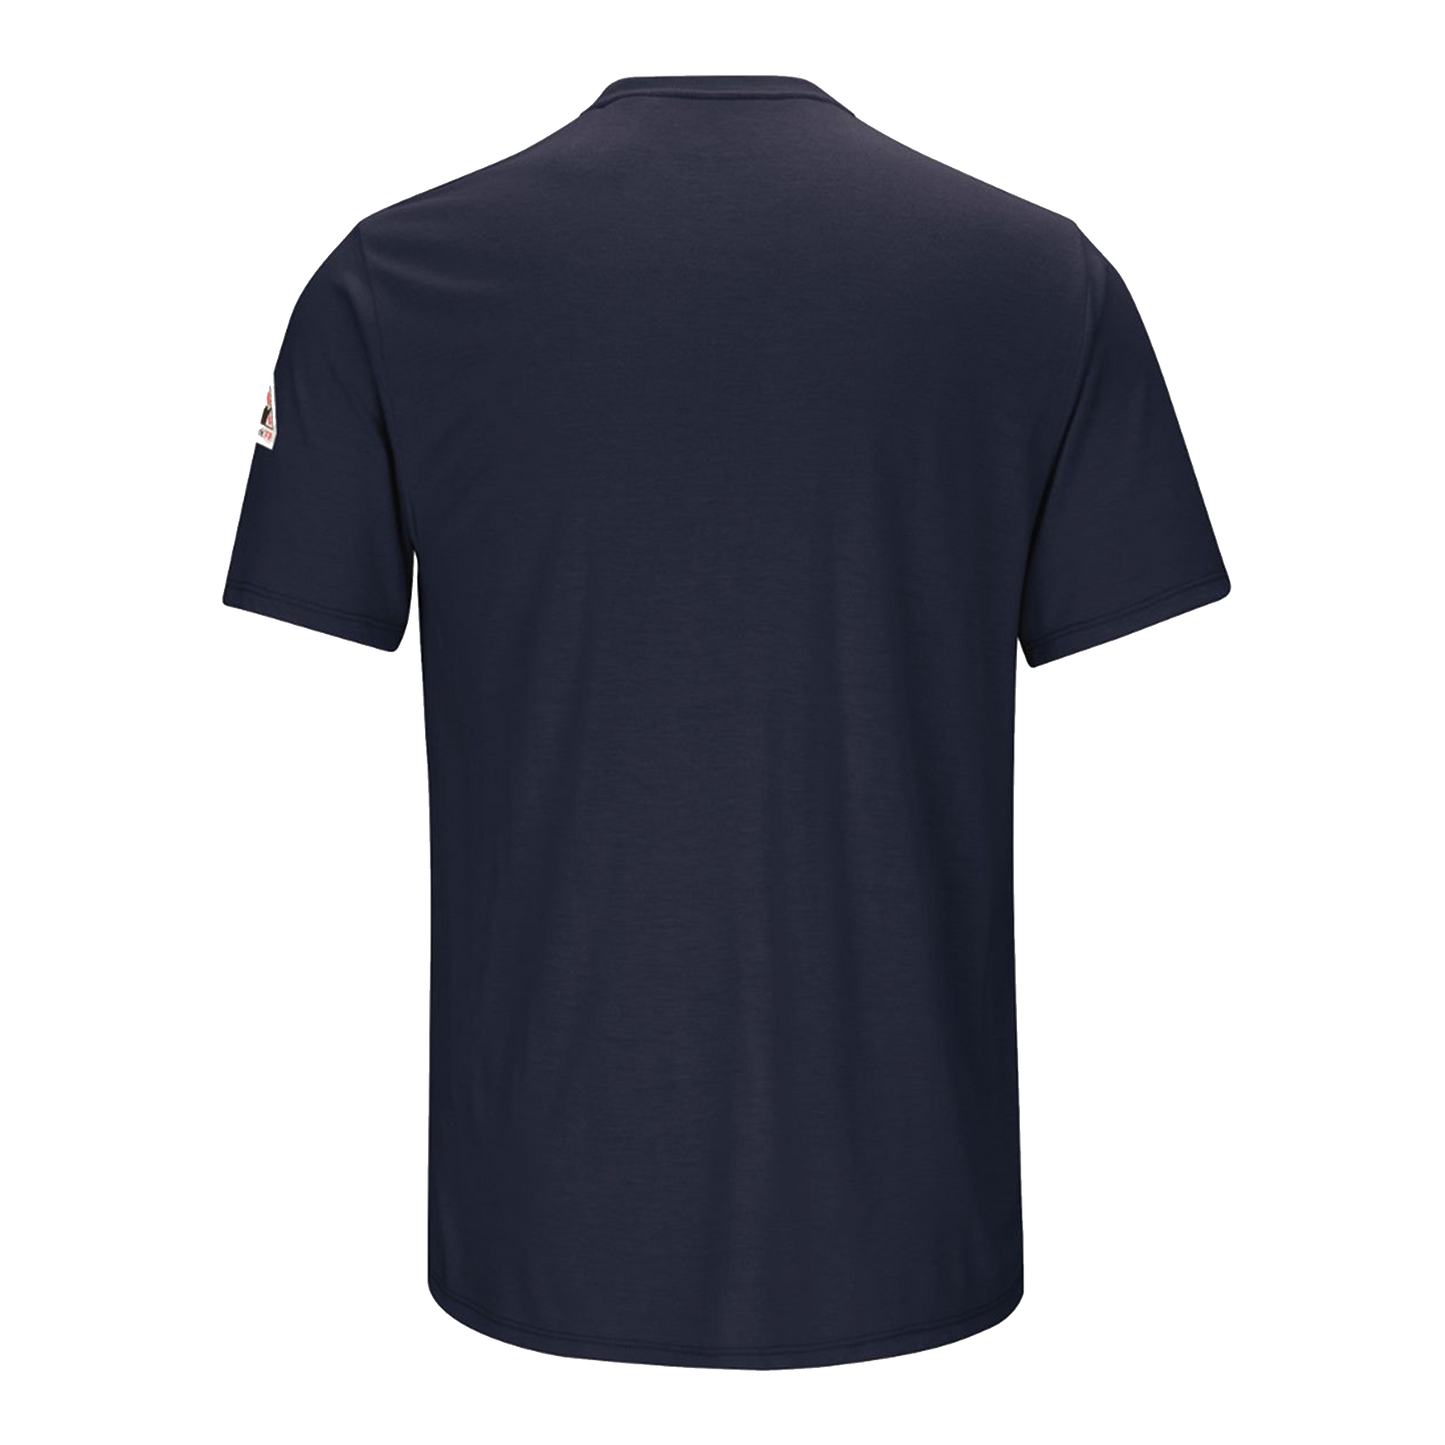 Bulwark - Short Sleeve Lightweight T-Shirt - SMT6